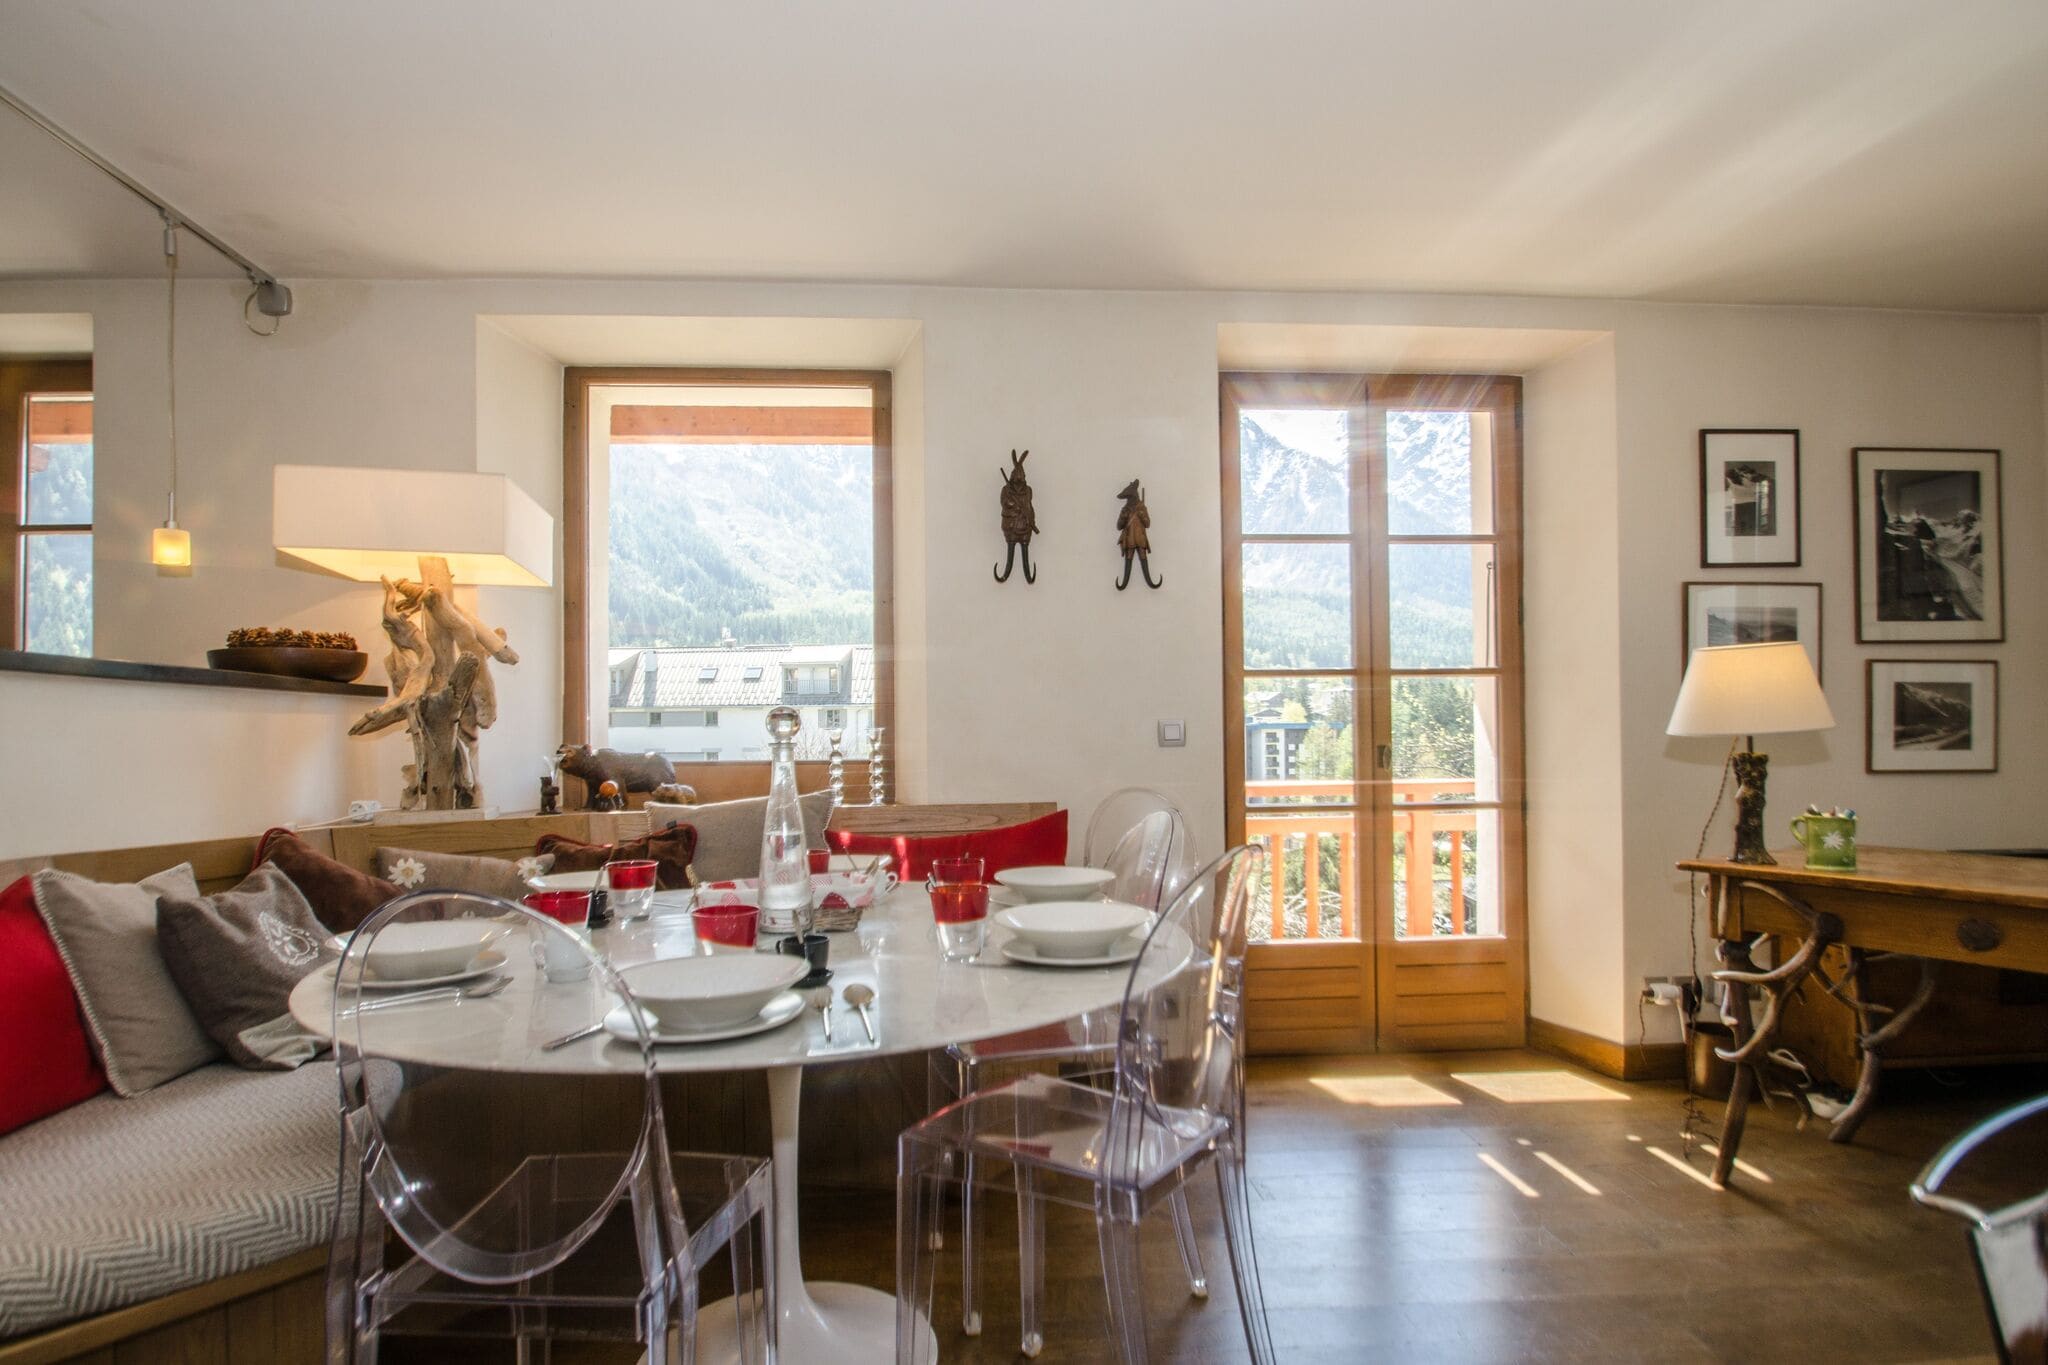 Mooi appartement met skiberging, jetstreambad en uitzicht op de Mont Blanc